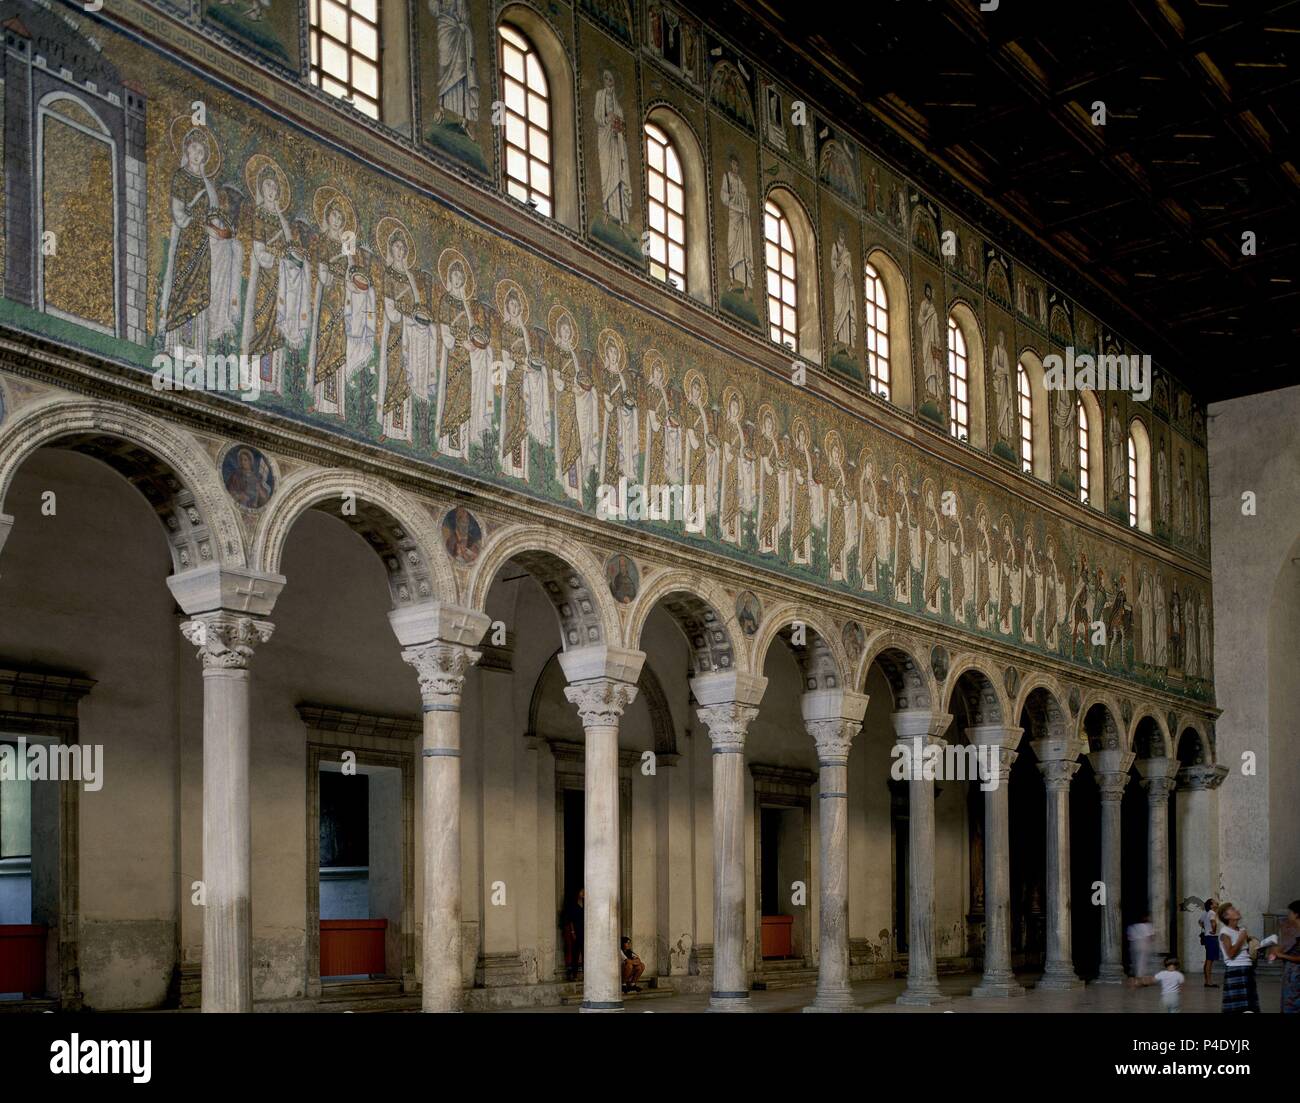 Conheça a cidade dos mosaicos na Itália: Ravena